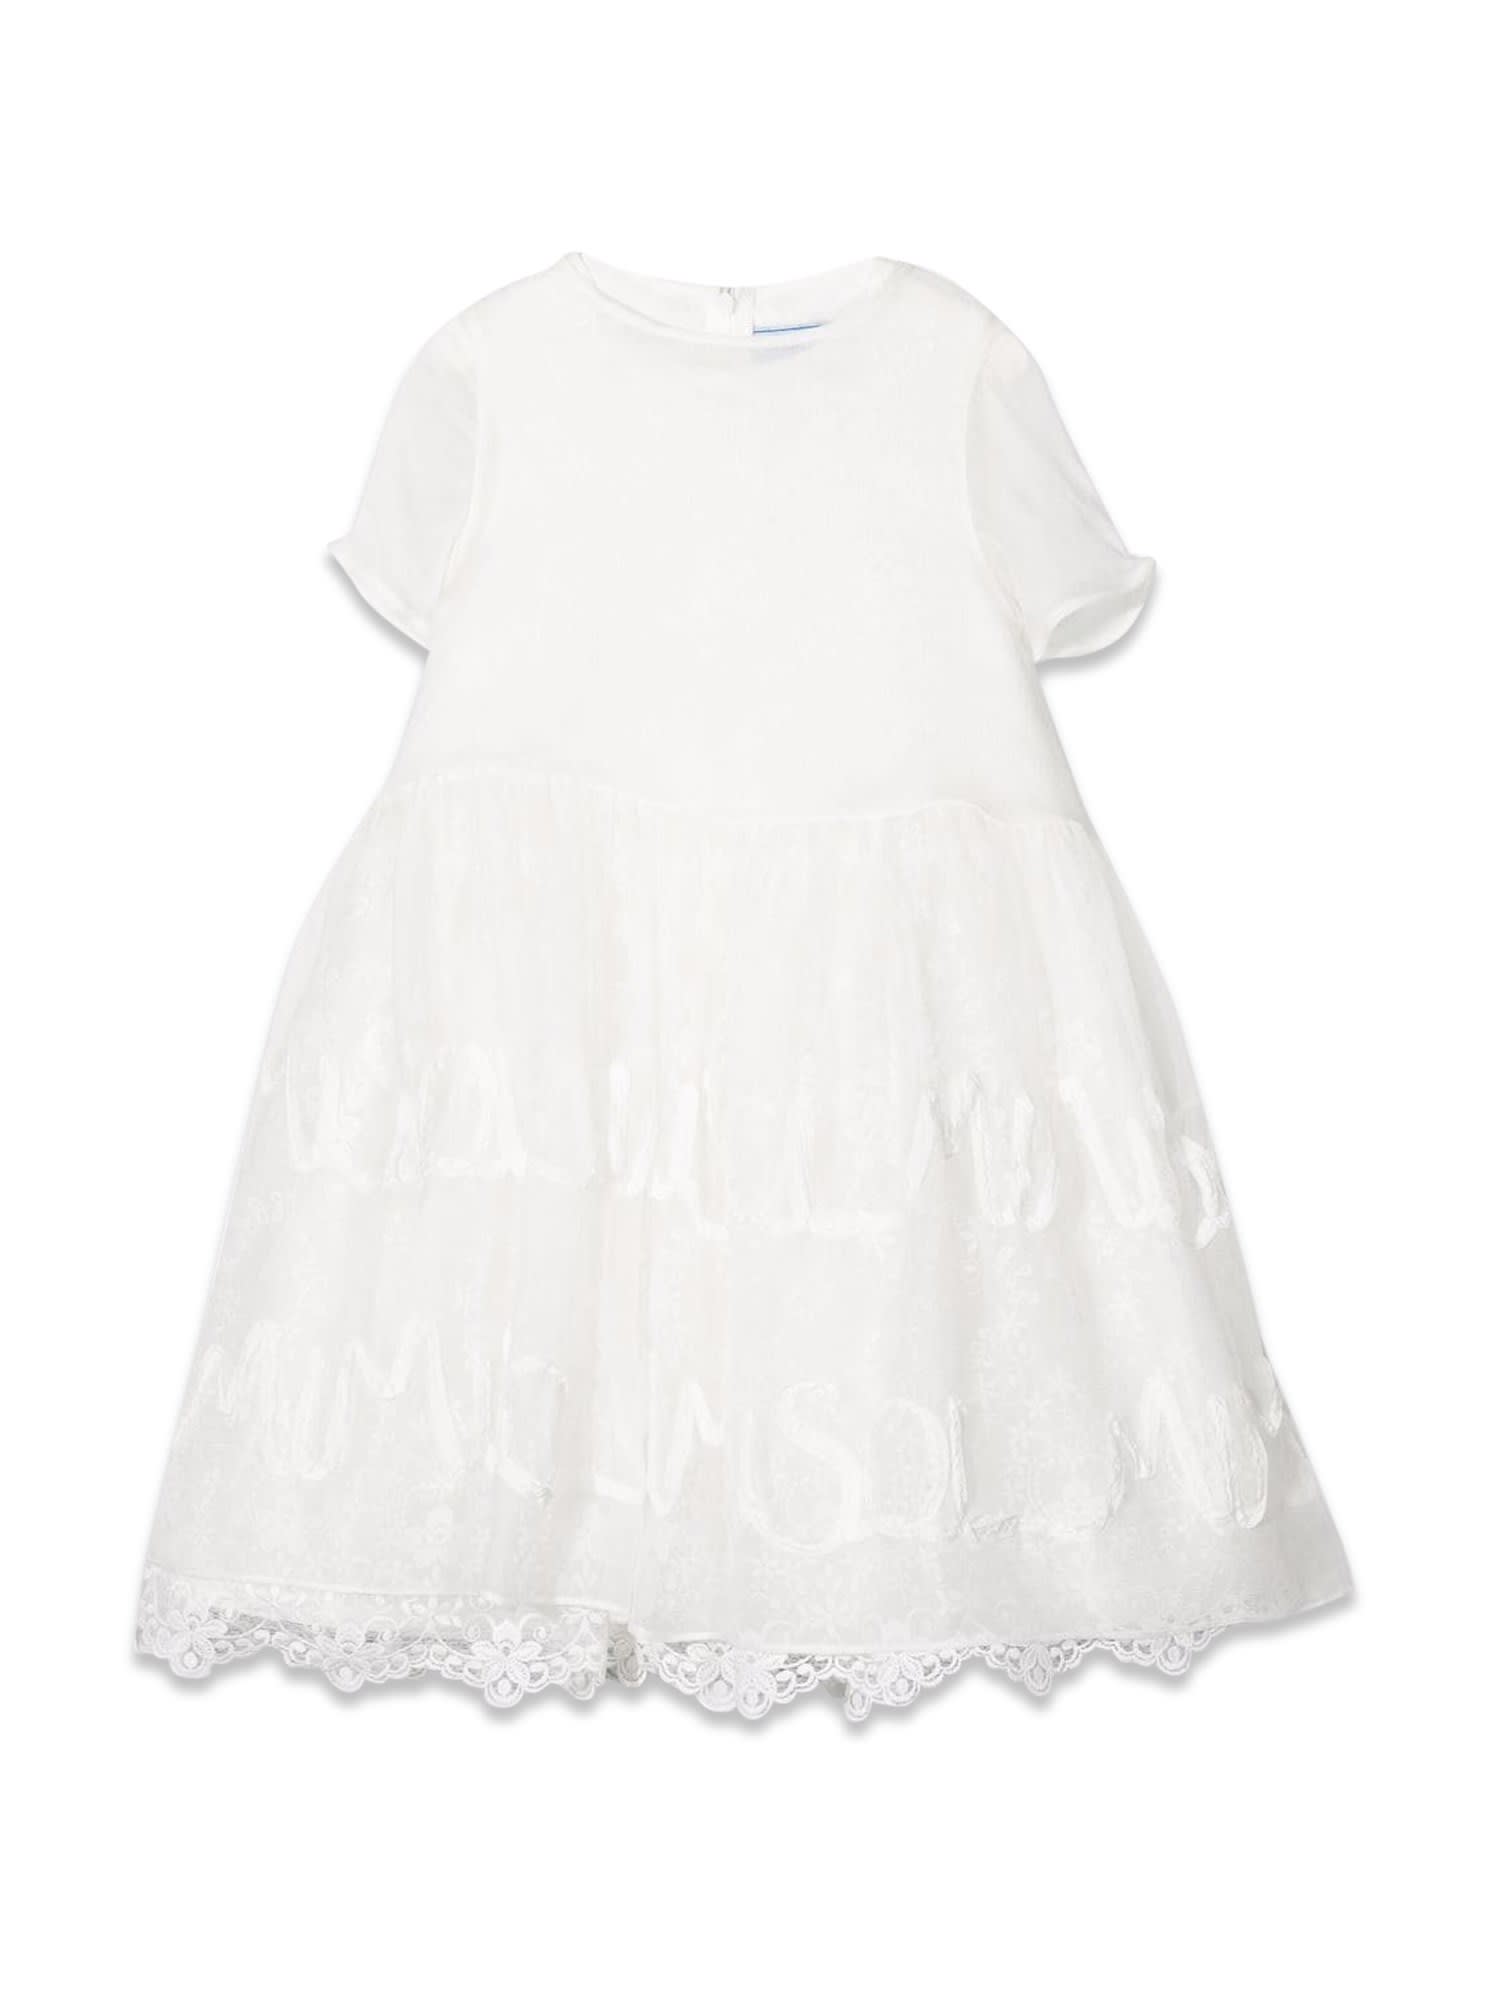 Mimisol Kids' Dress In Bianco